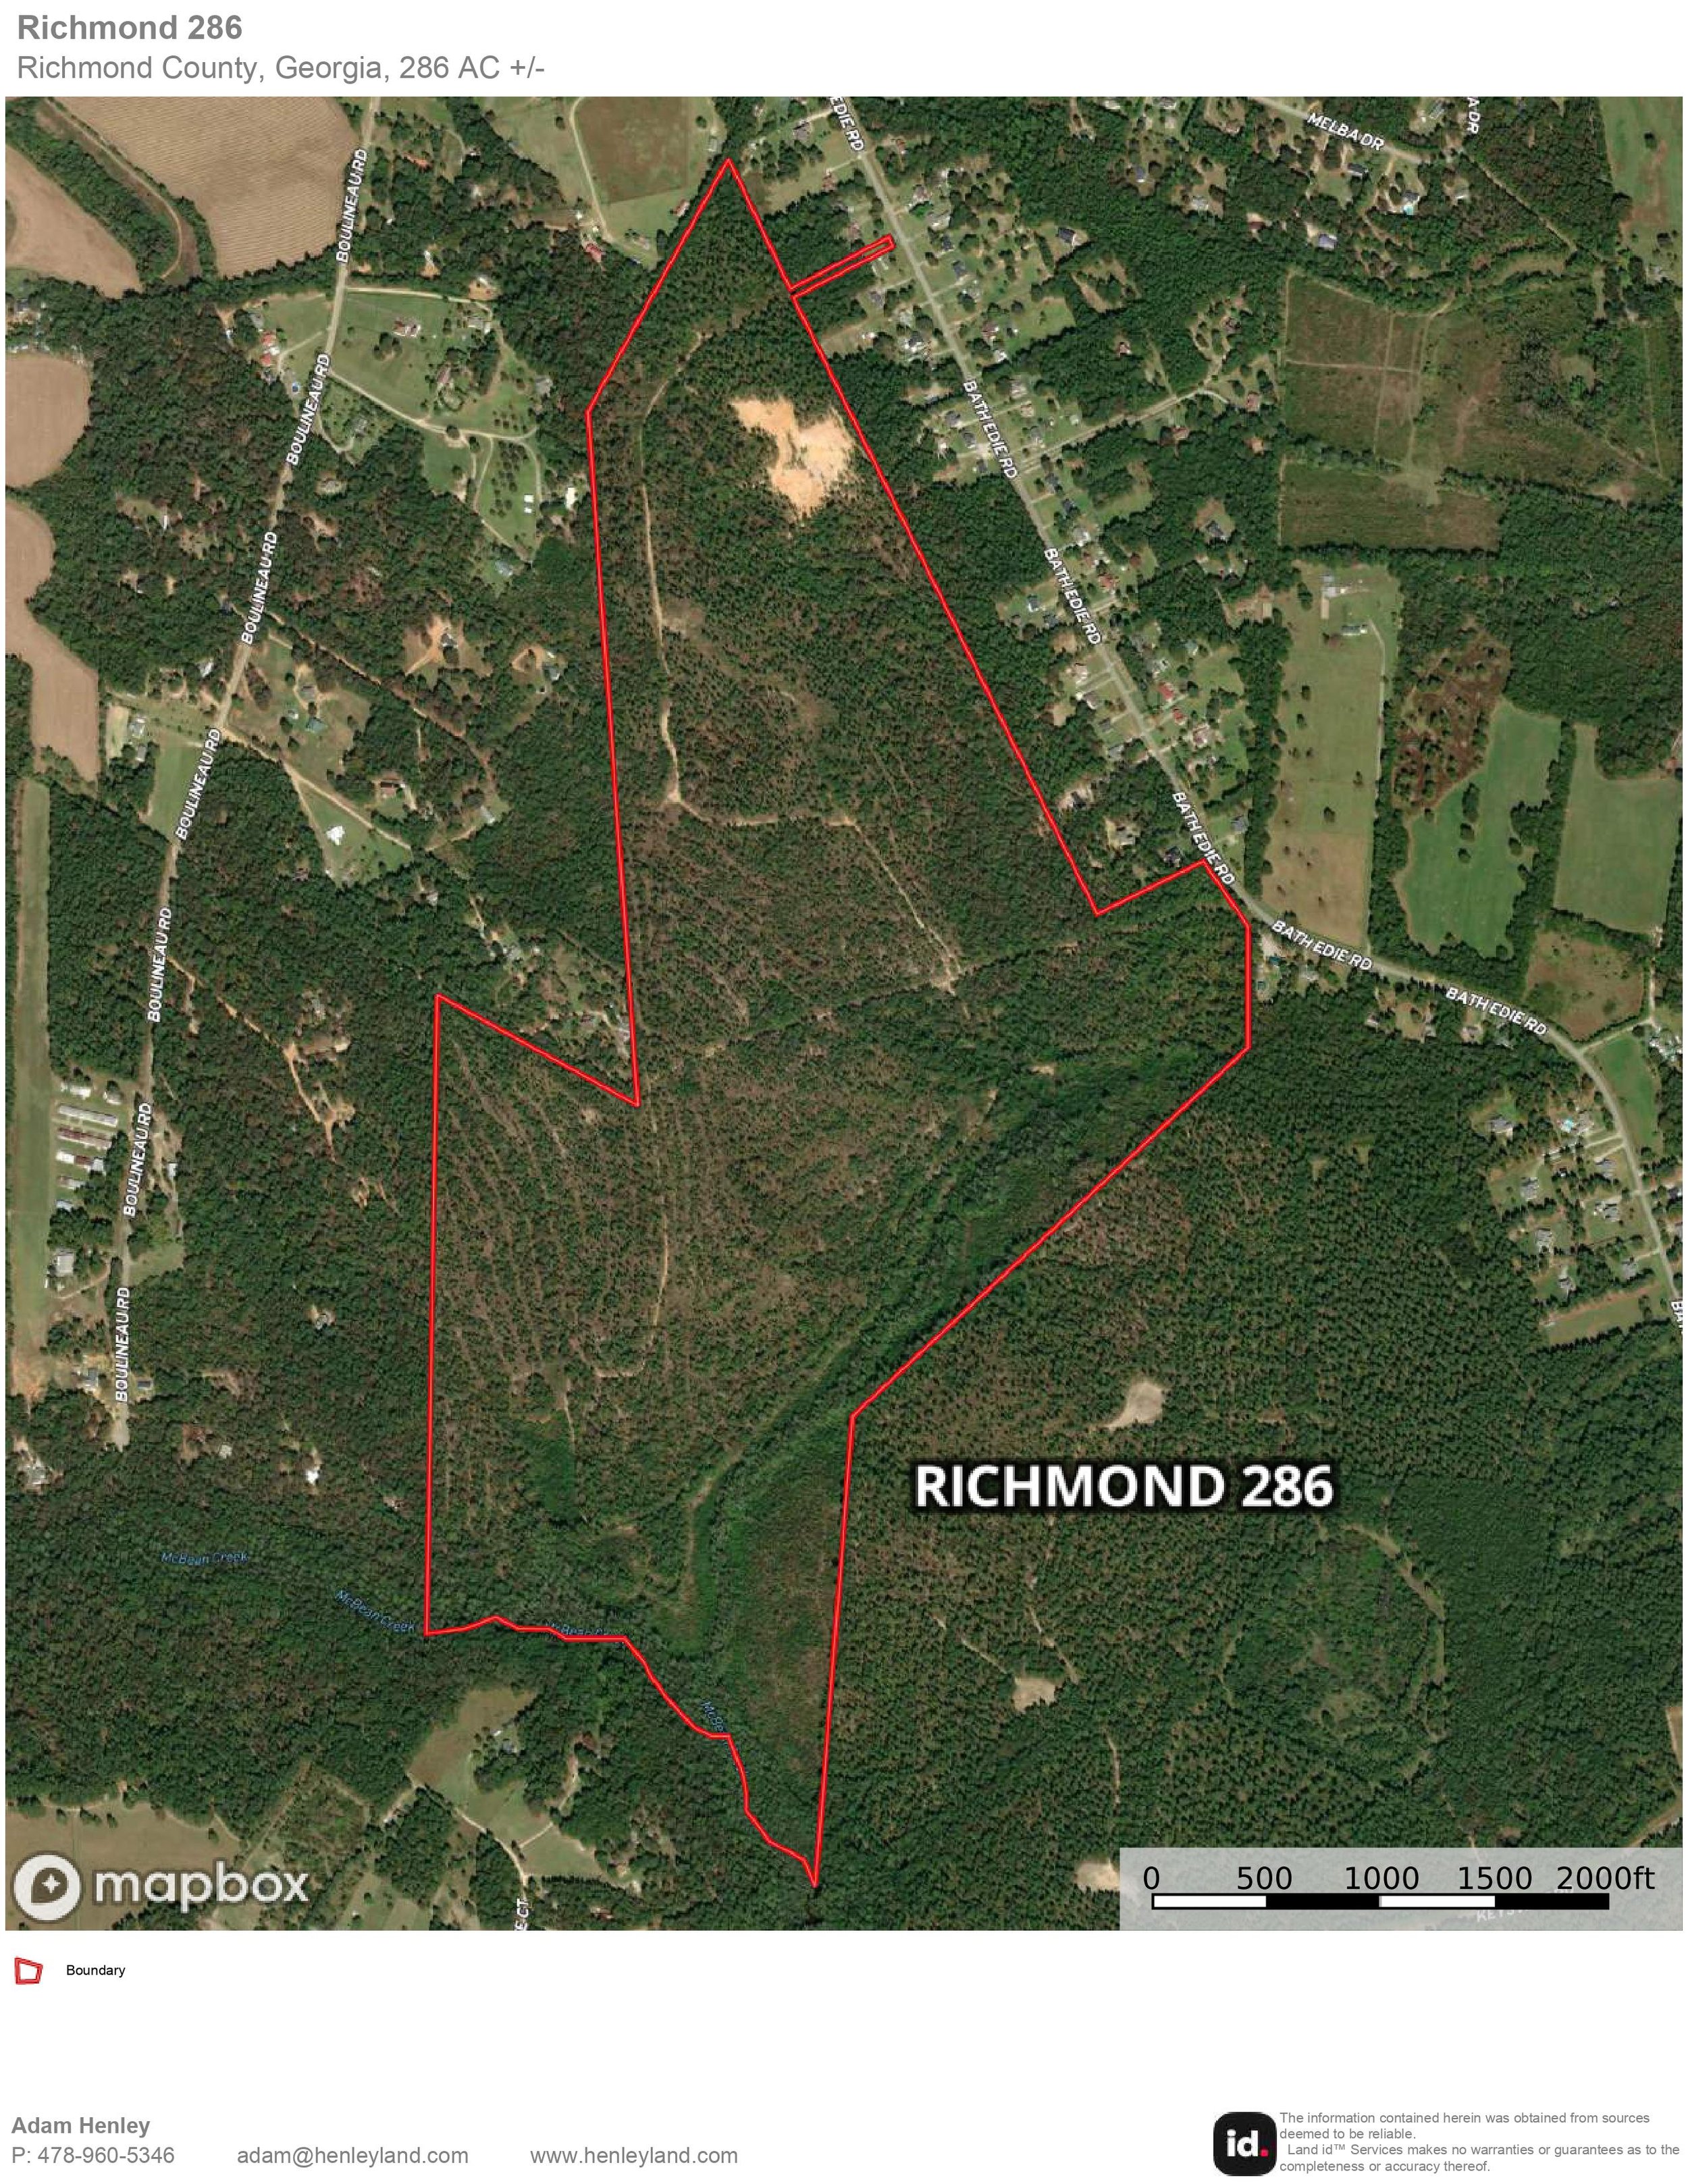 Richmond 286 - Aerial Map.jpg